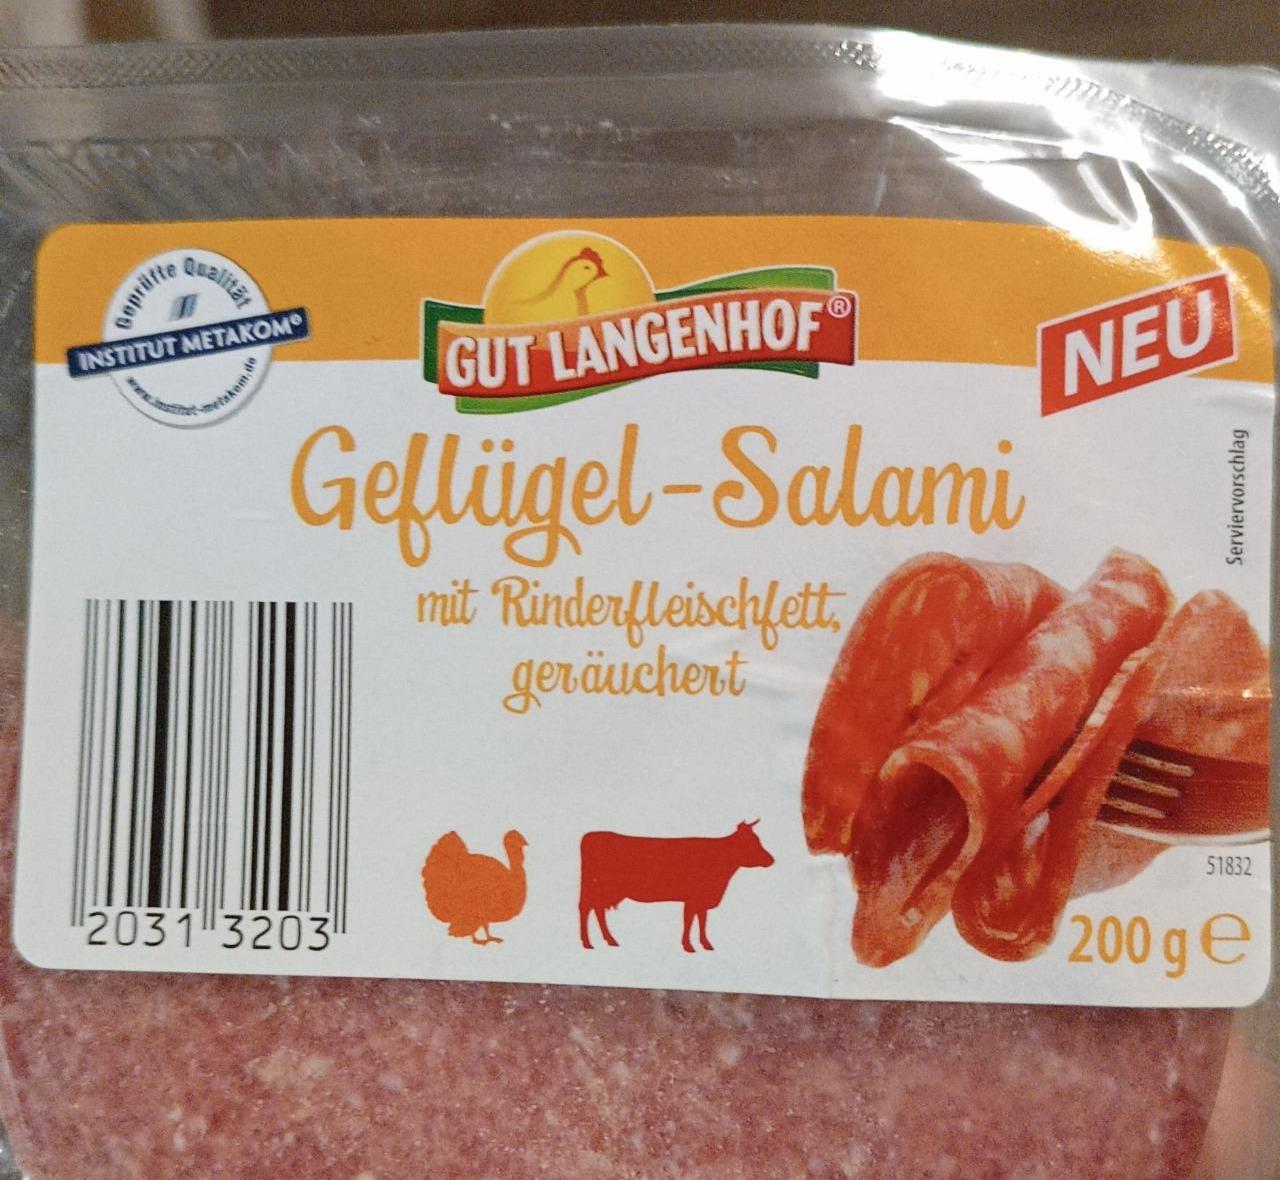 Fotografie - Geflügel-Salami mit Rinderfleischfett Gut Langenhof